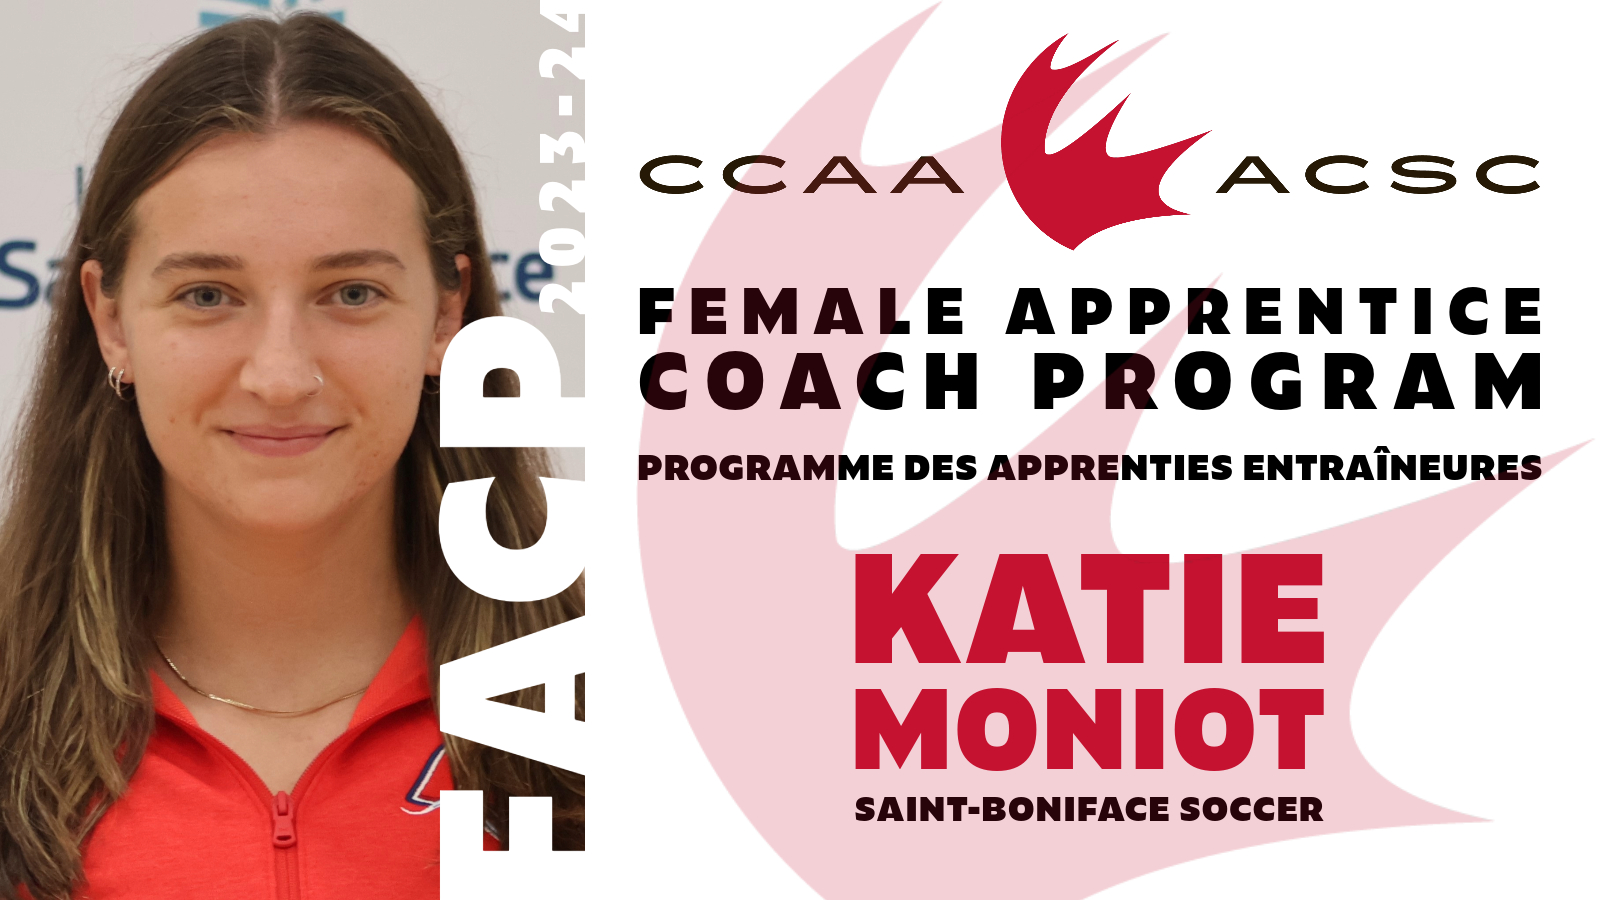 CCAA Soccer apprentice: Katie Moniot